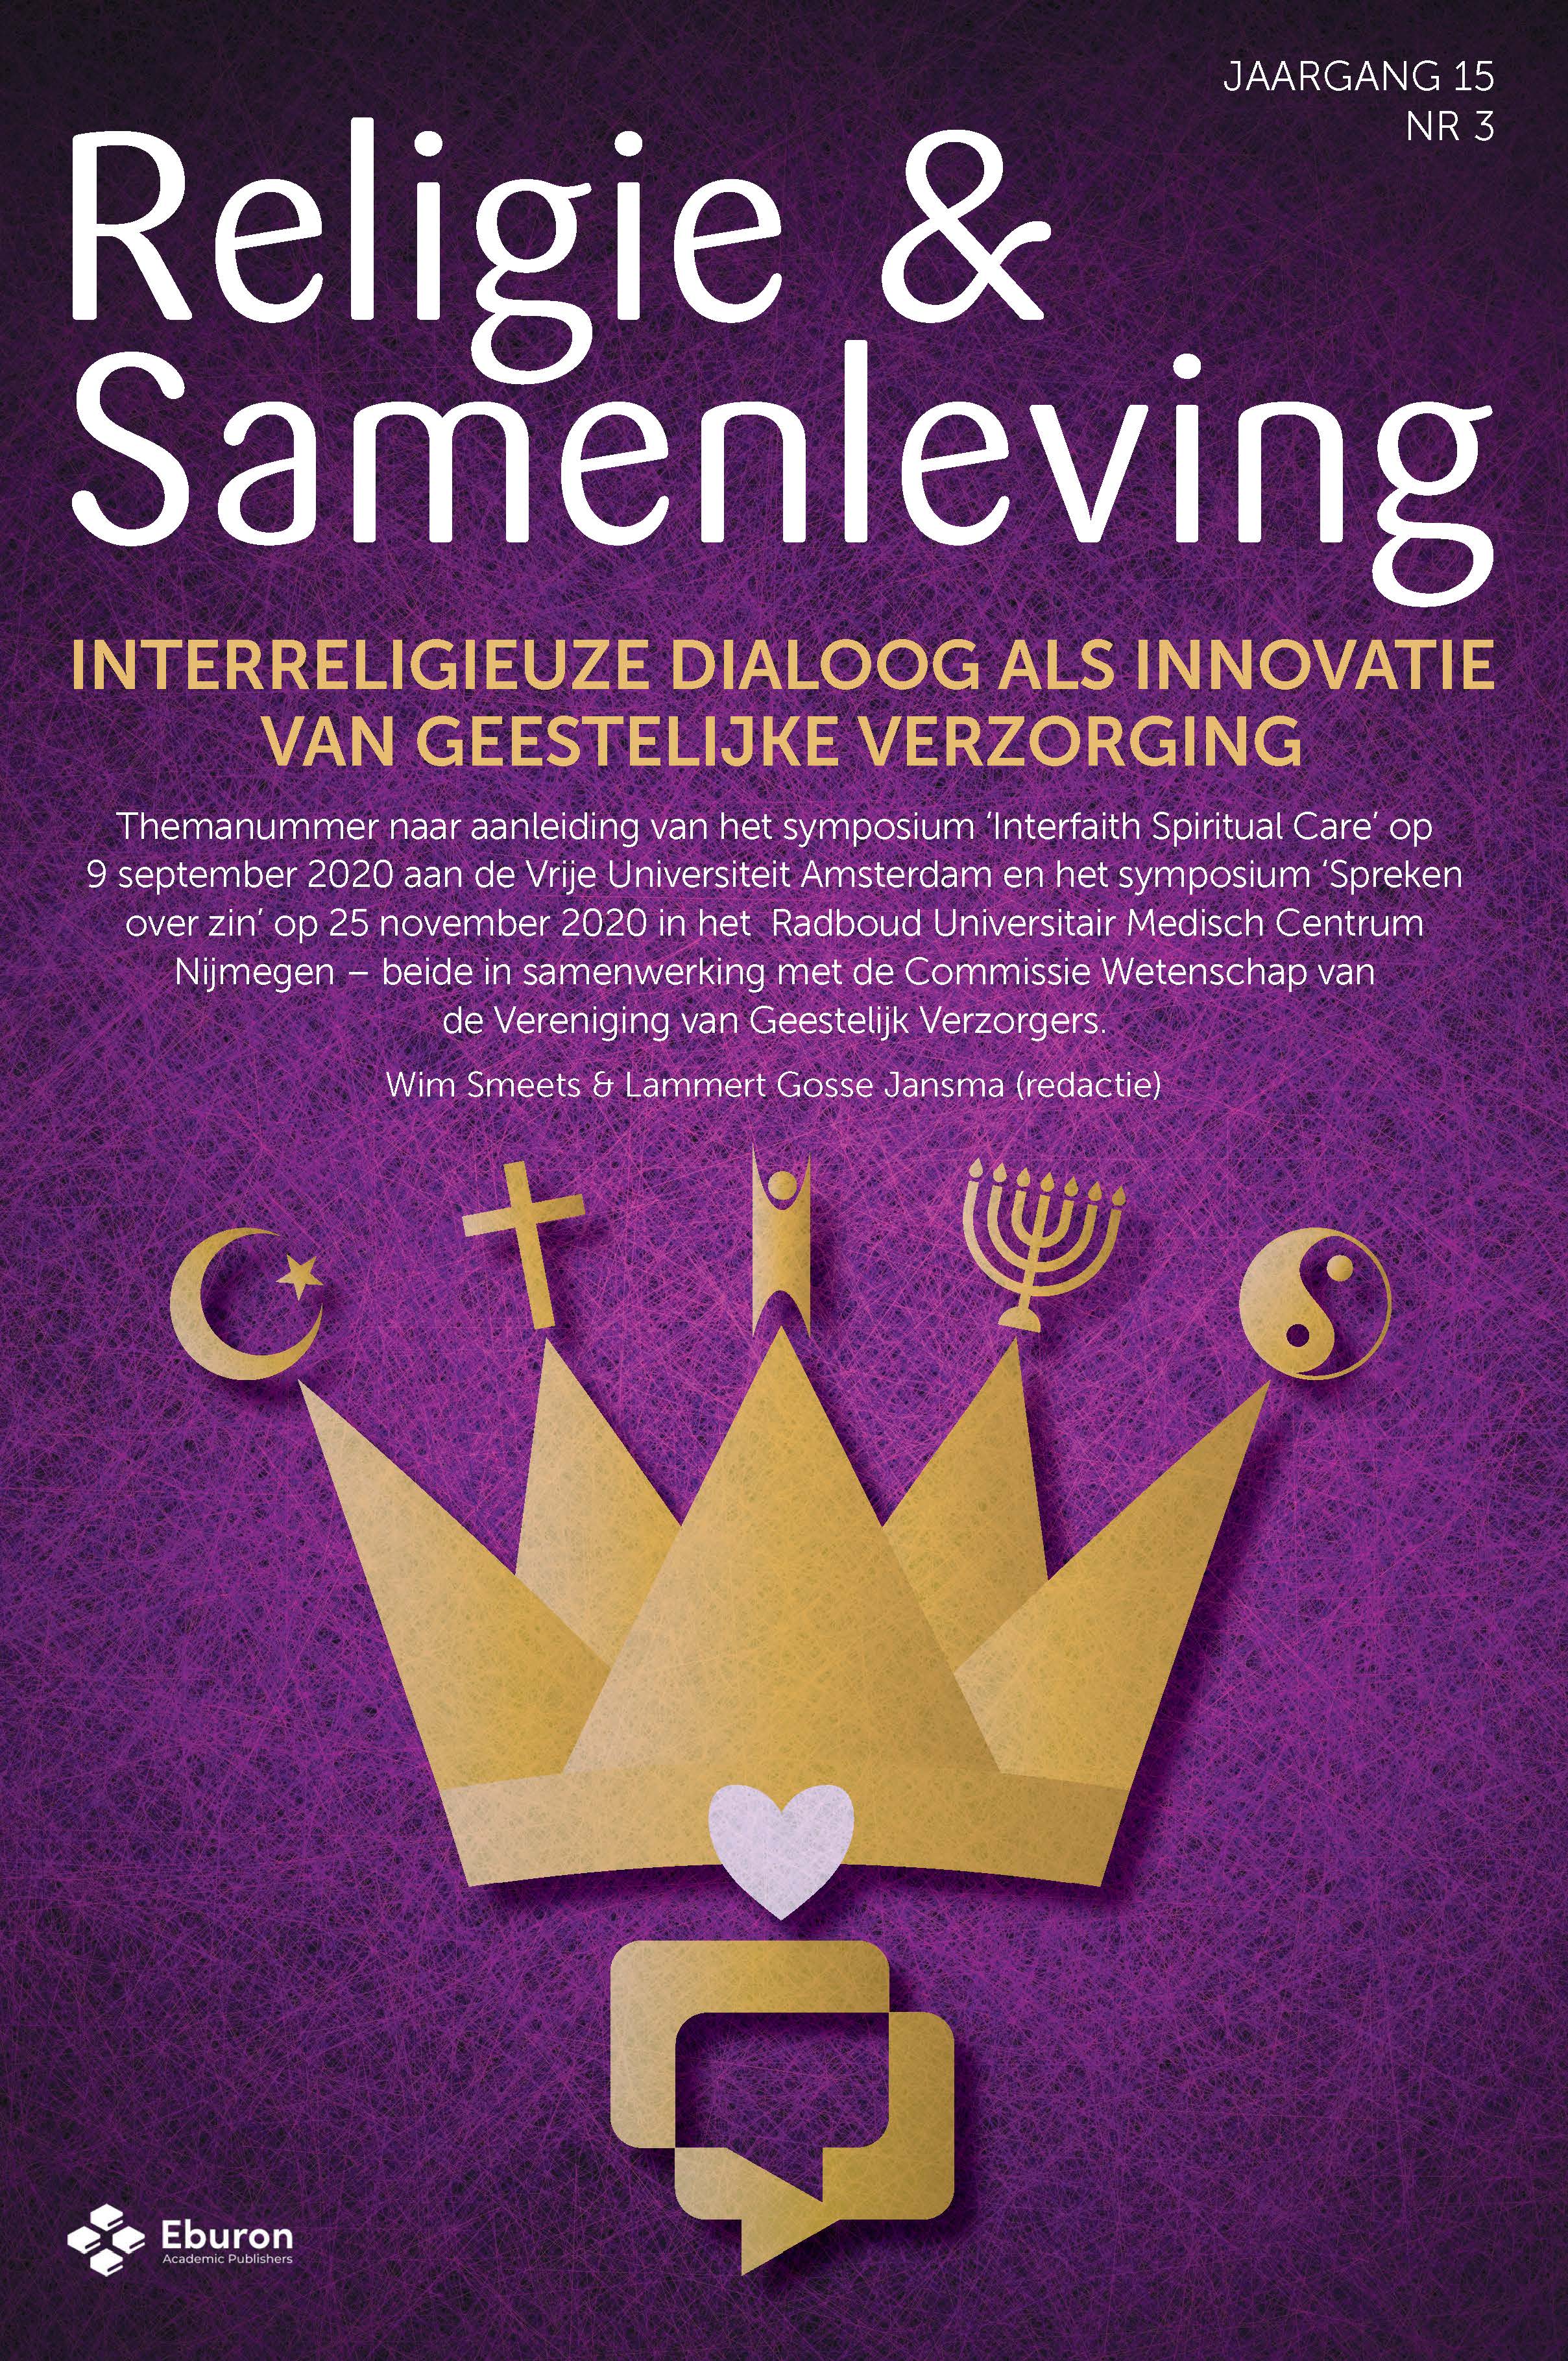 					Toon Vol 15 Nr 3 (2020): Interreligieuze dialoog als innovatie van geestelijke verzorging
				